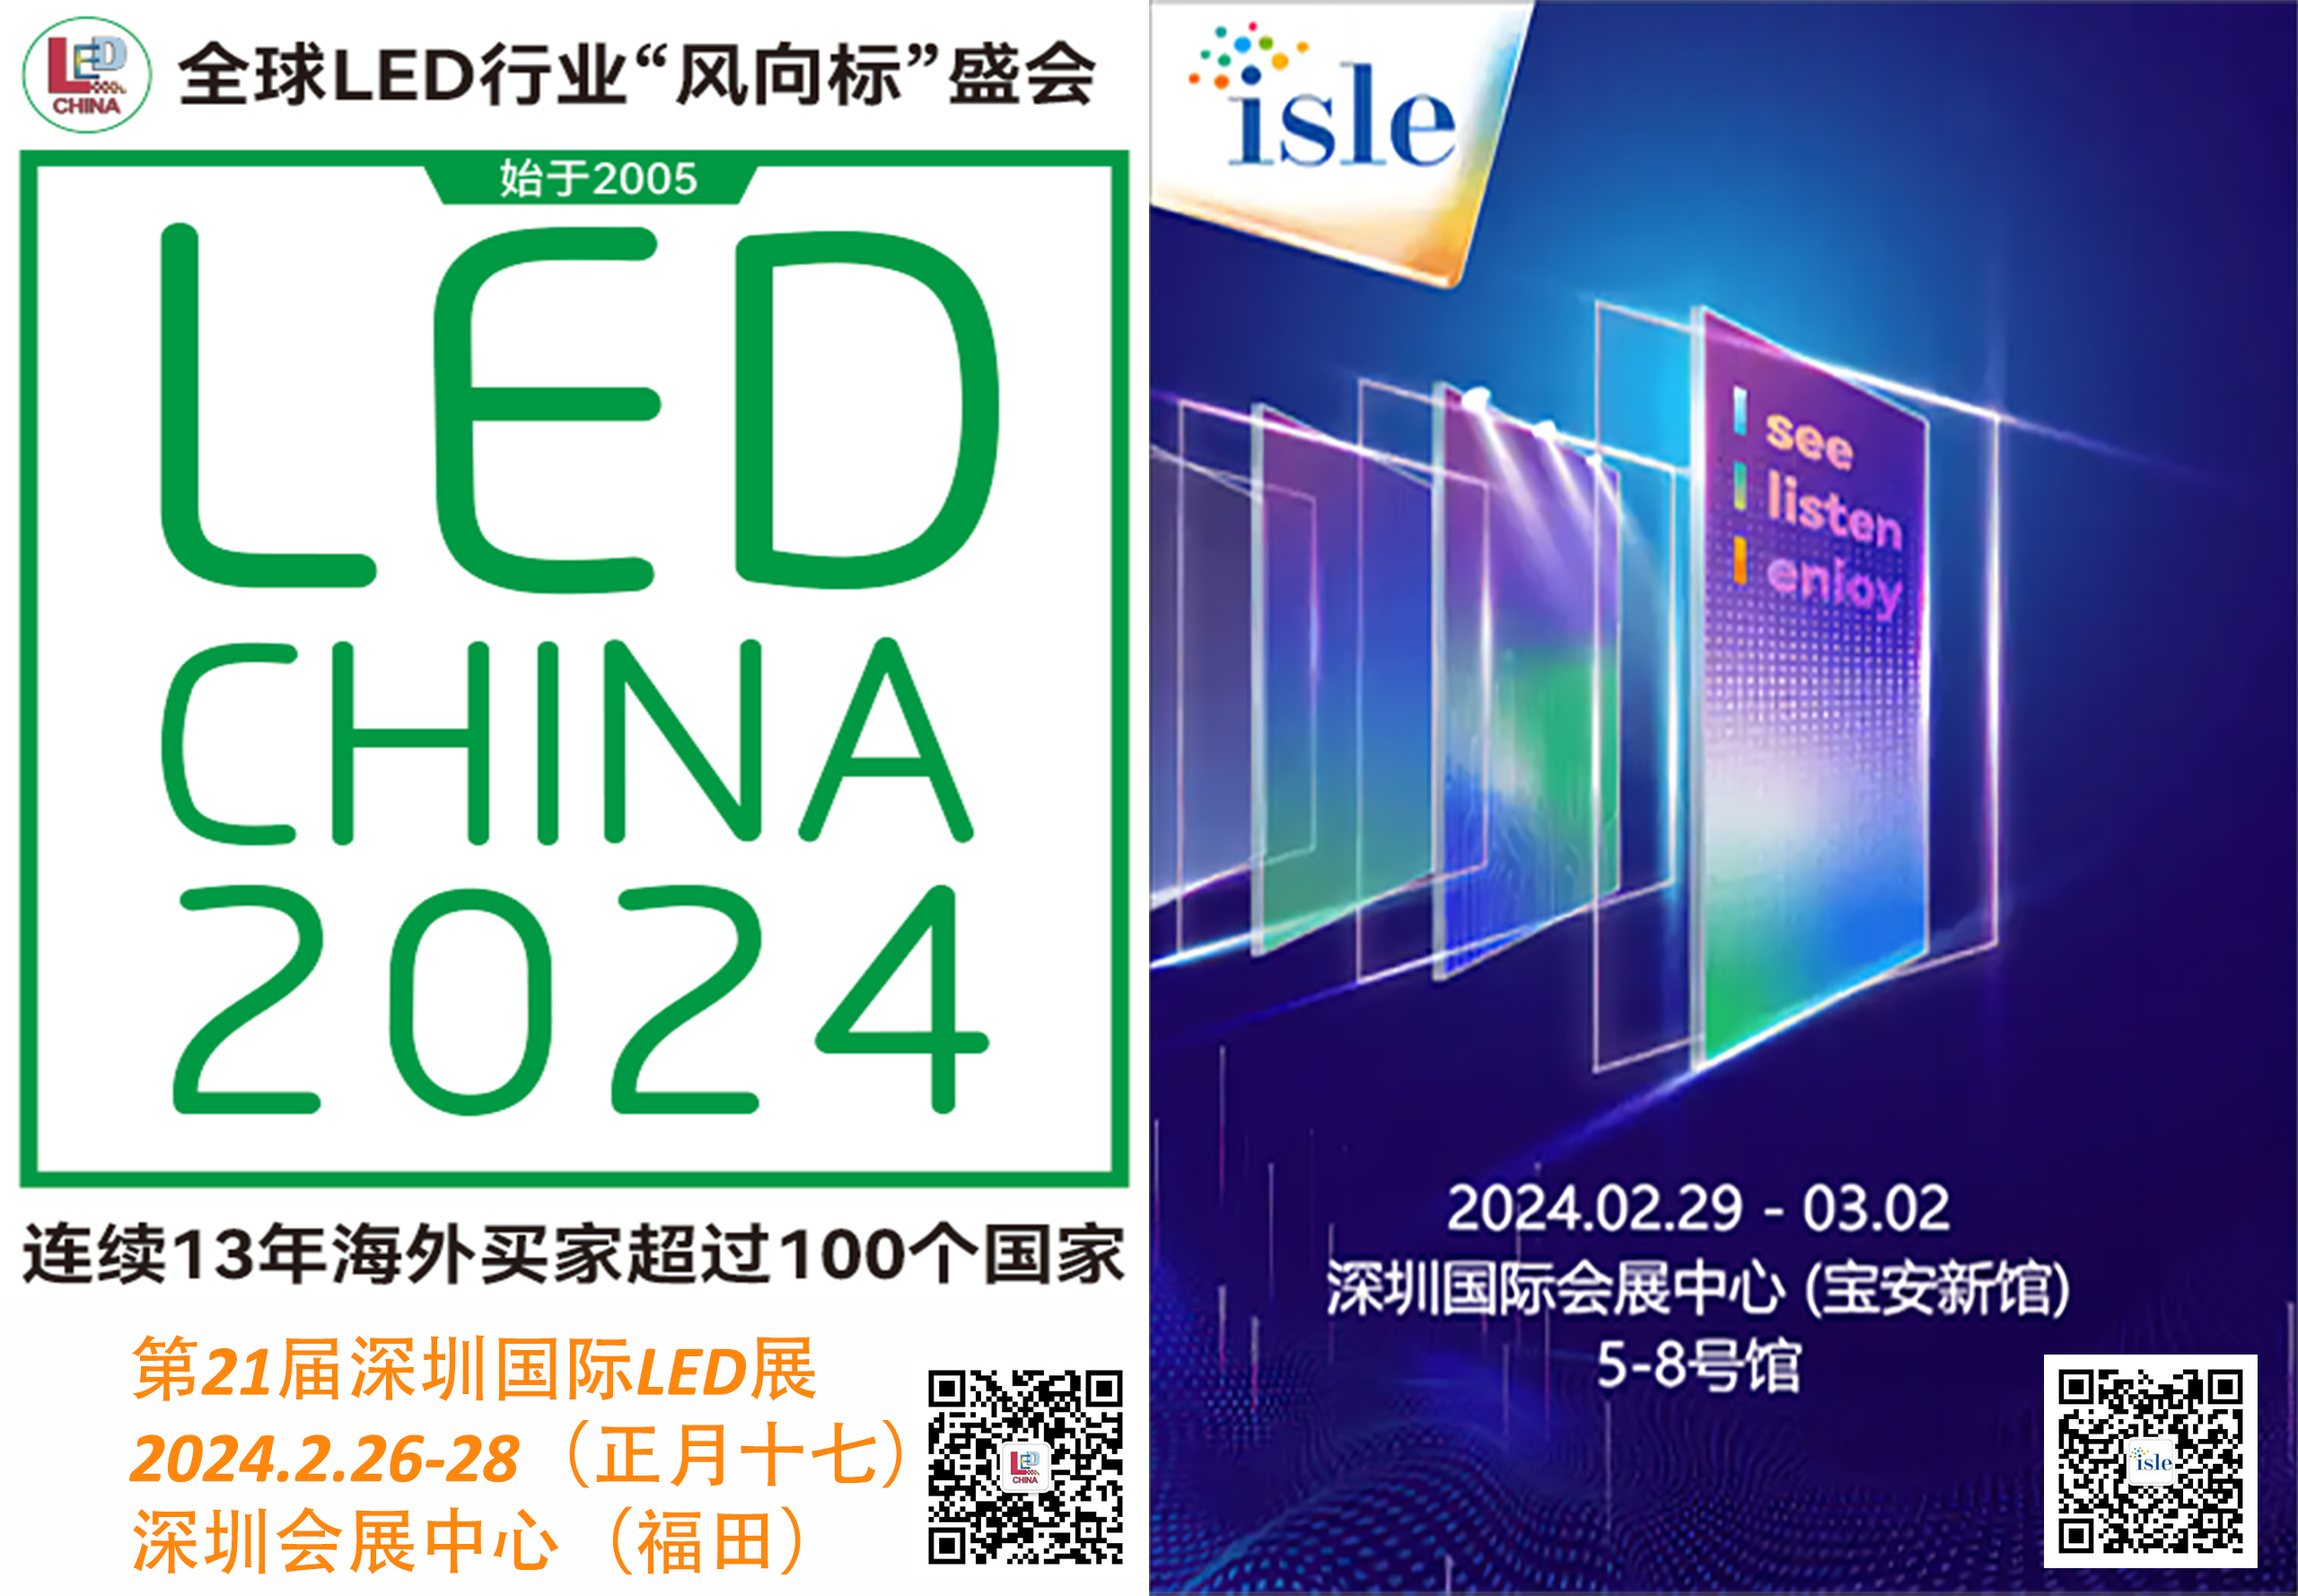 Grande semaine la semaine prochaine à Shenzhen pour l’industrie de la signalisation numérique LED!